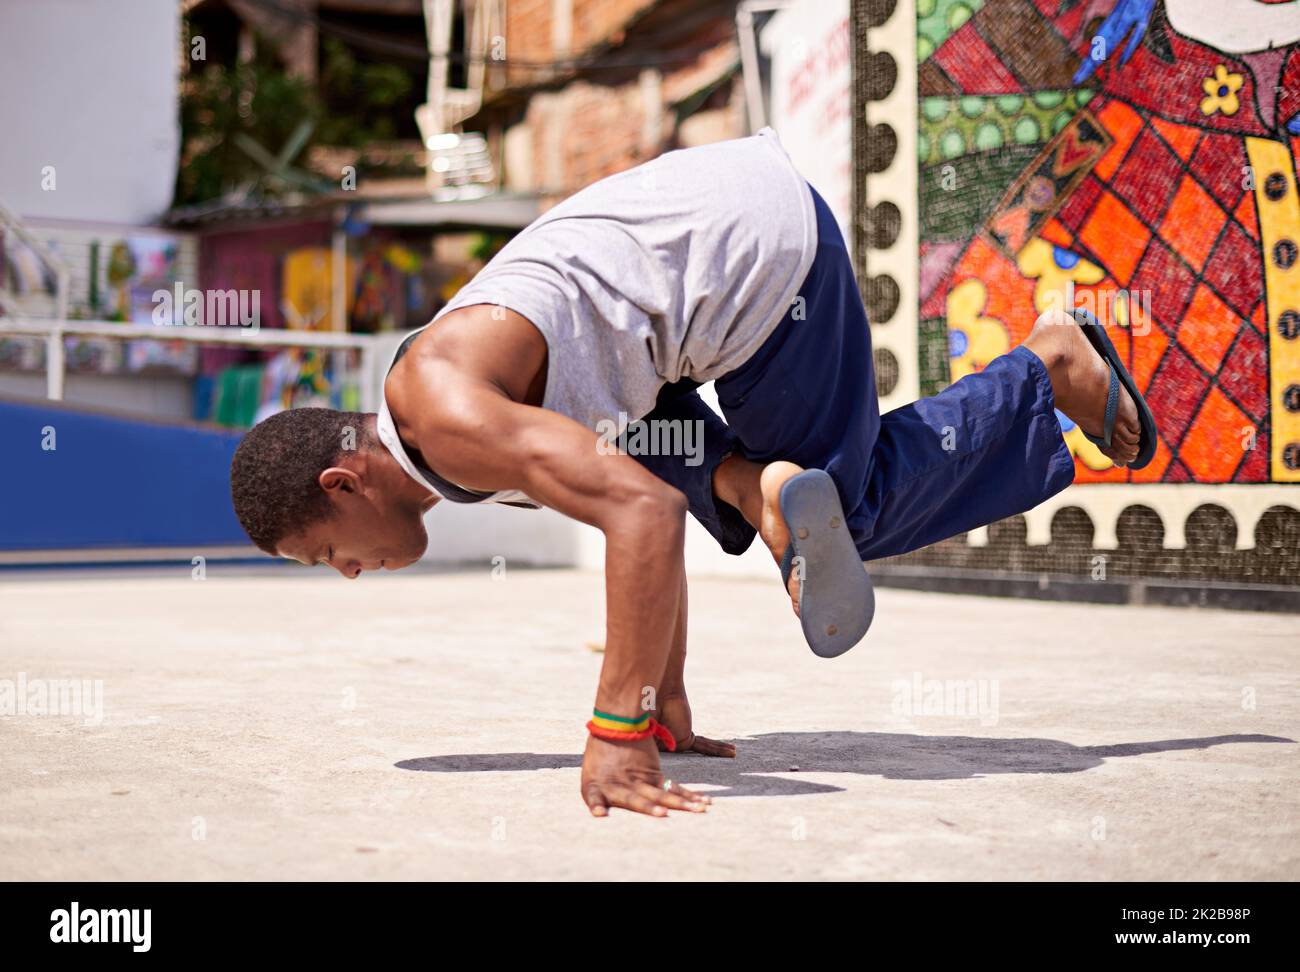 Cultura di Capoeira. Basso angolo di ripresa di un giovane uomo frangidanzatore in un ambiente urbano. Foto Stock